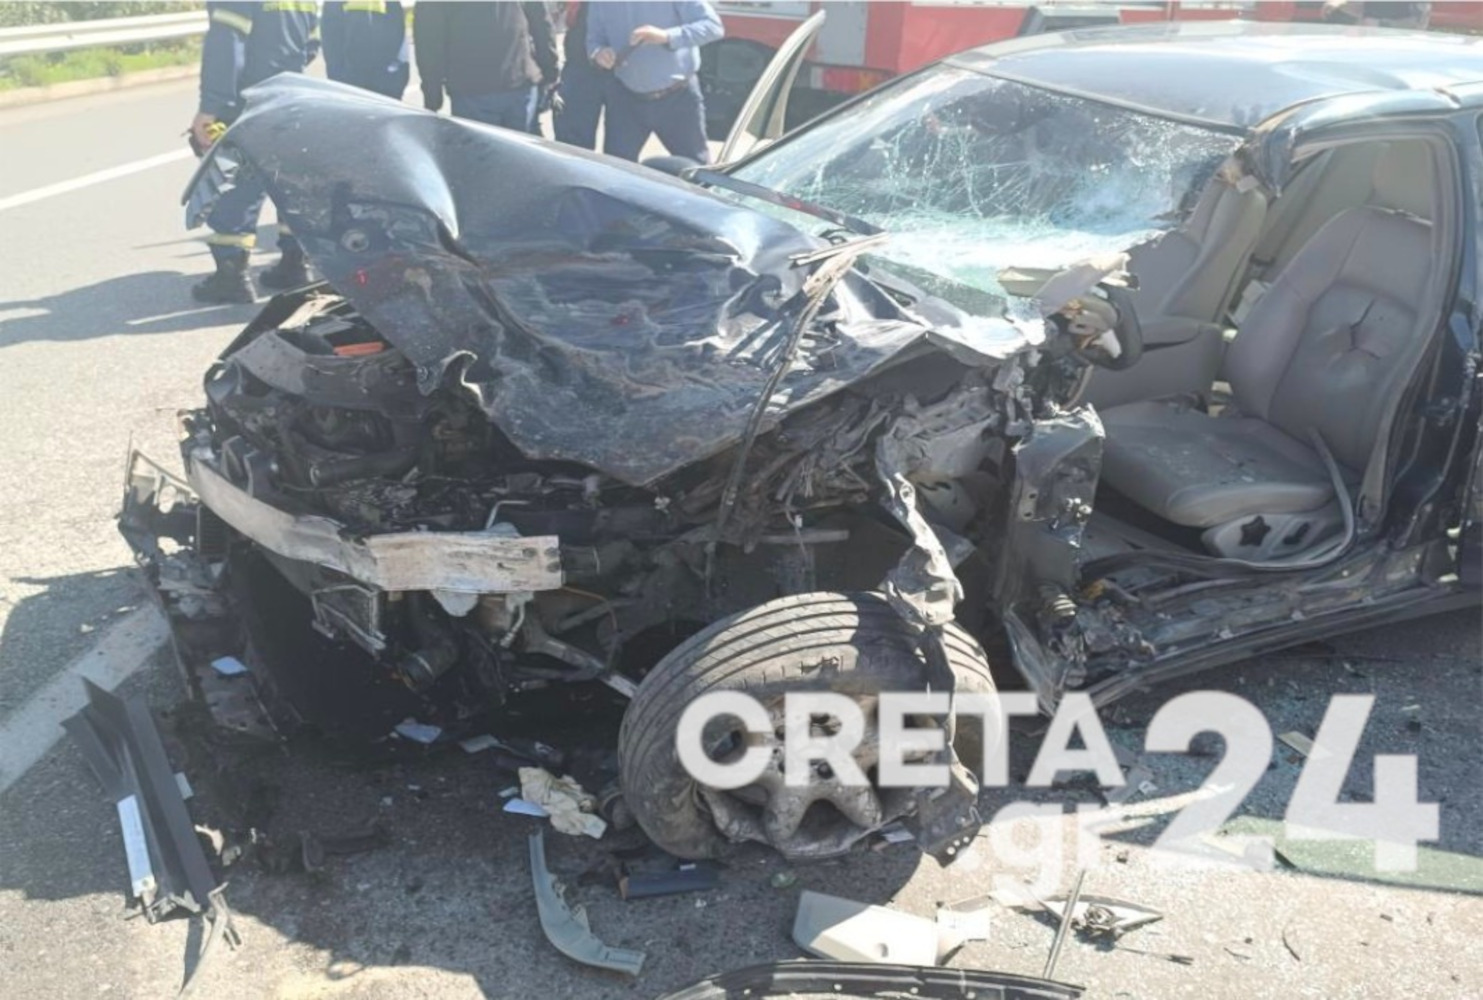 Ηράκλειο: Τροχαίο στον κόμβο Σκαλανίου, αυτοκίνητο και φορτηγάκι έγιναν σμπαράλια